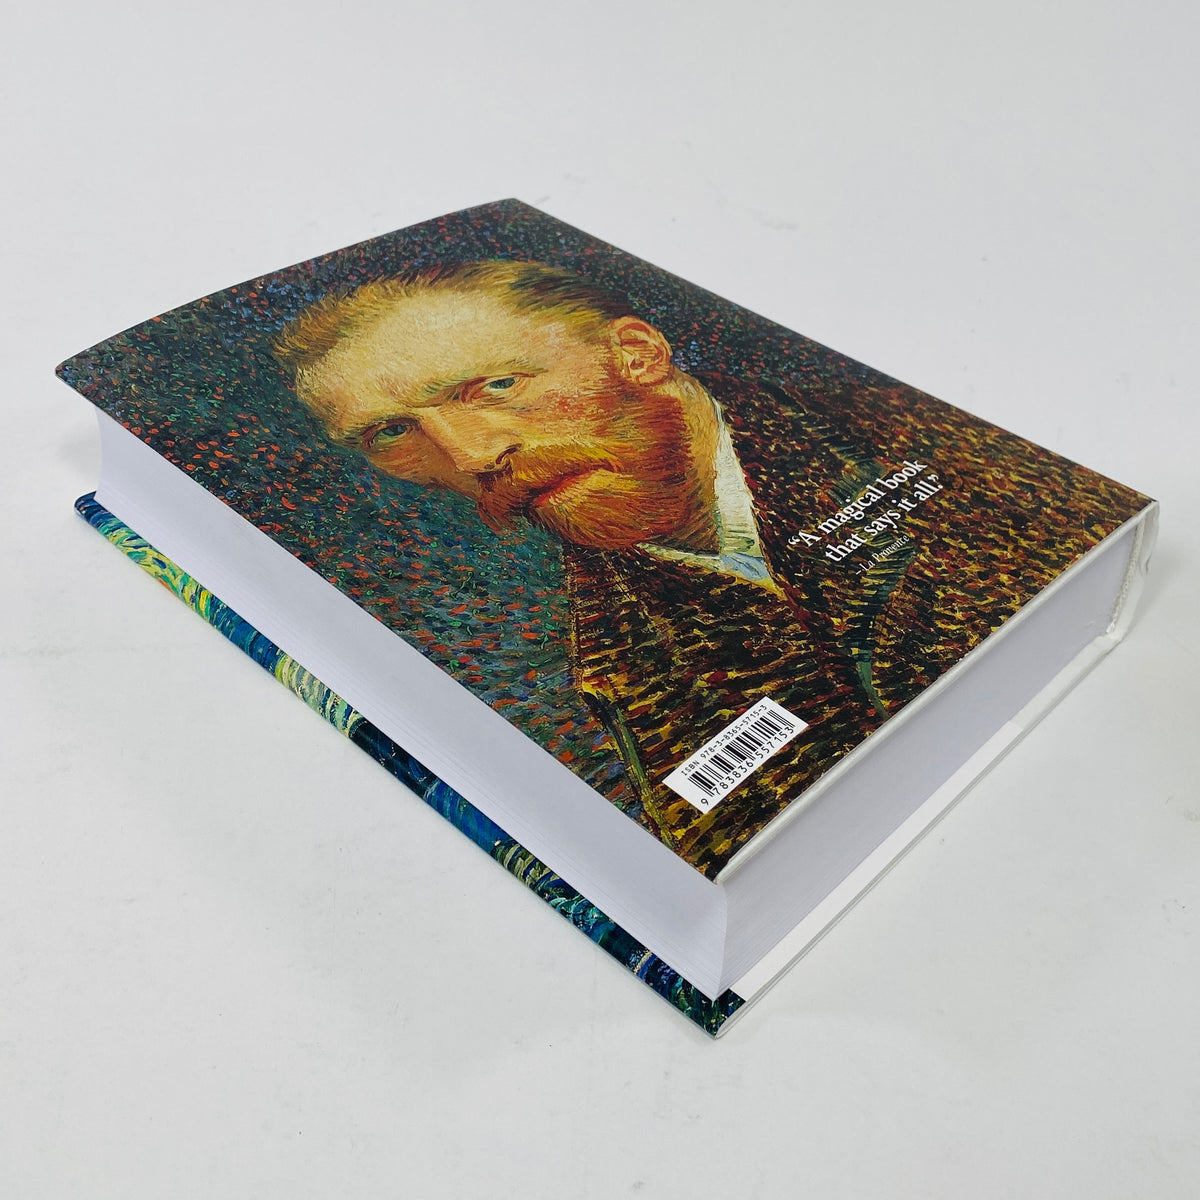 Van Gogh - The Complete Paintings - BU Series